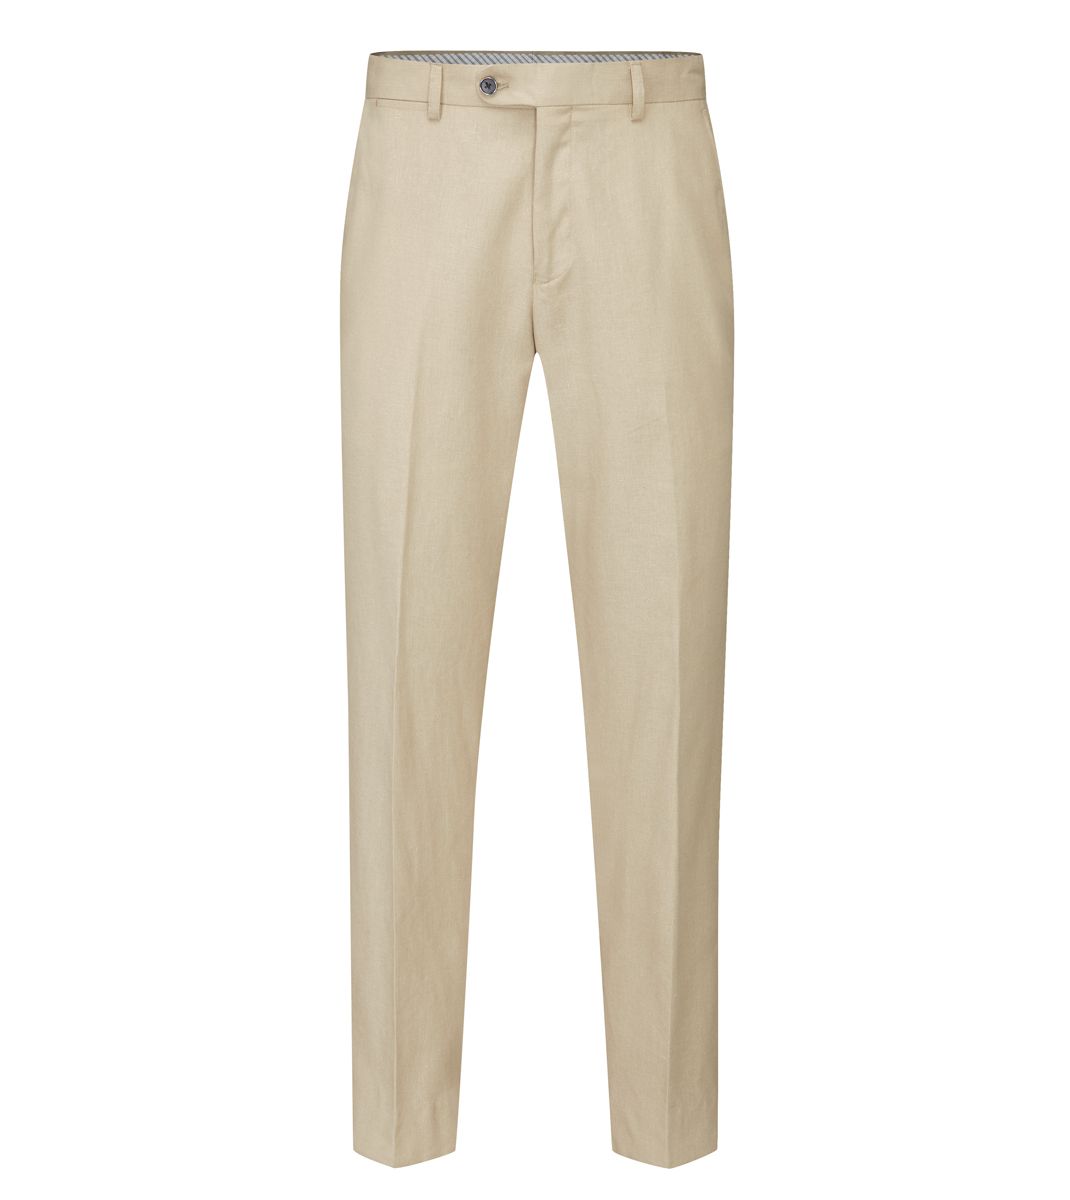 Skopes Stone Tuscany Linen Blend Trouser Regular Length